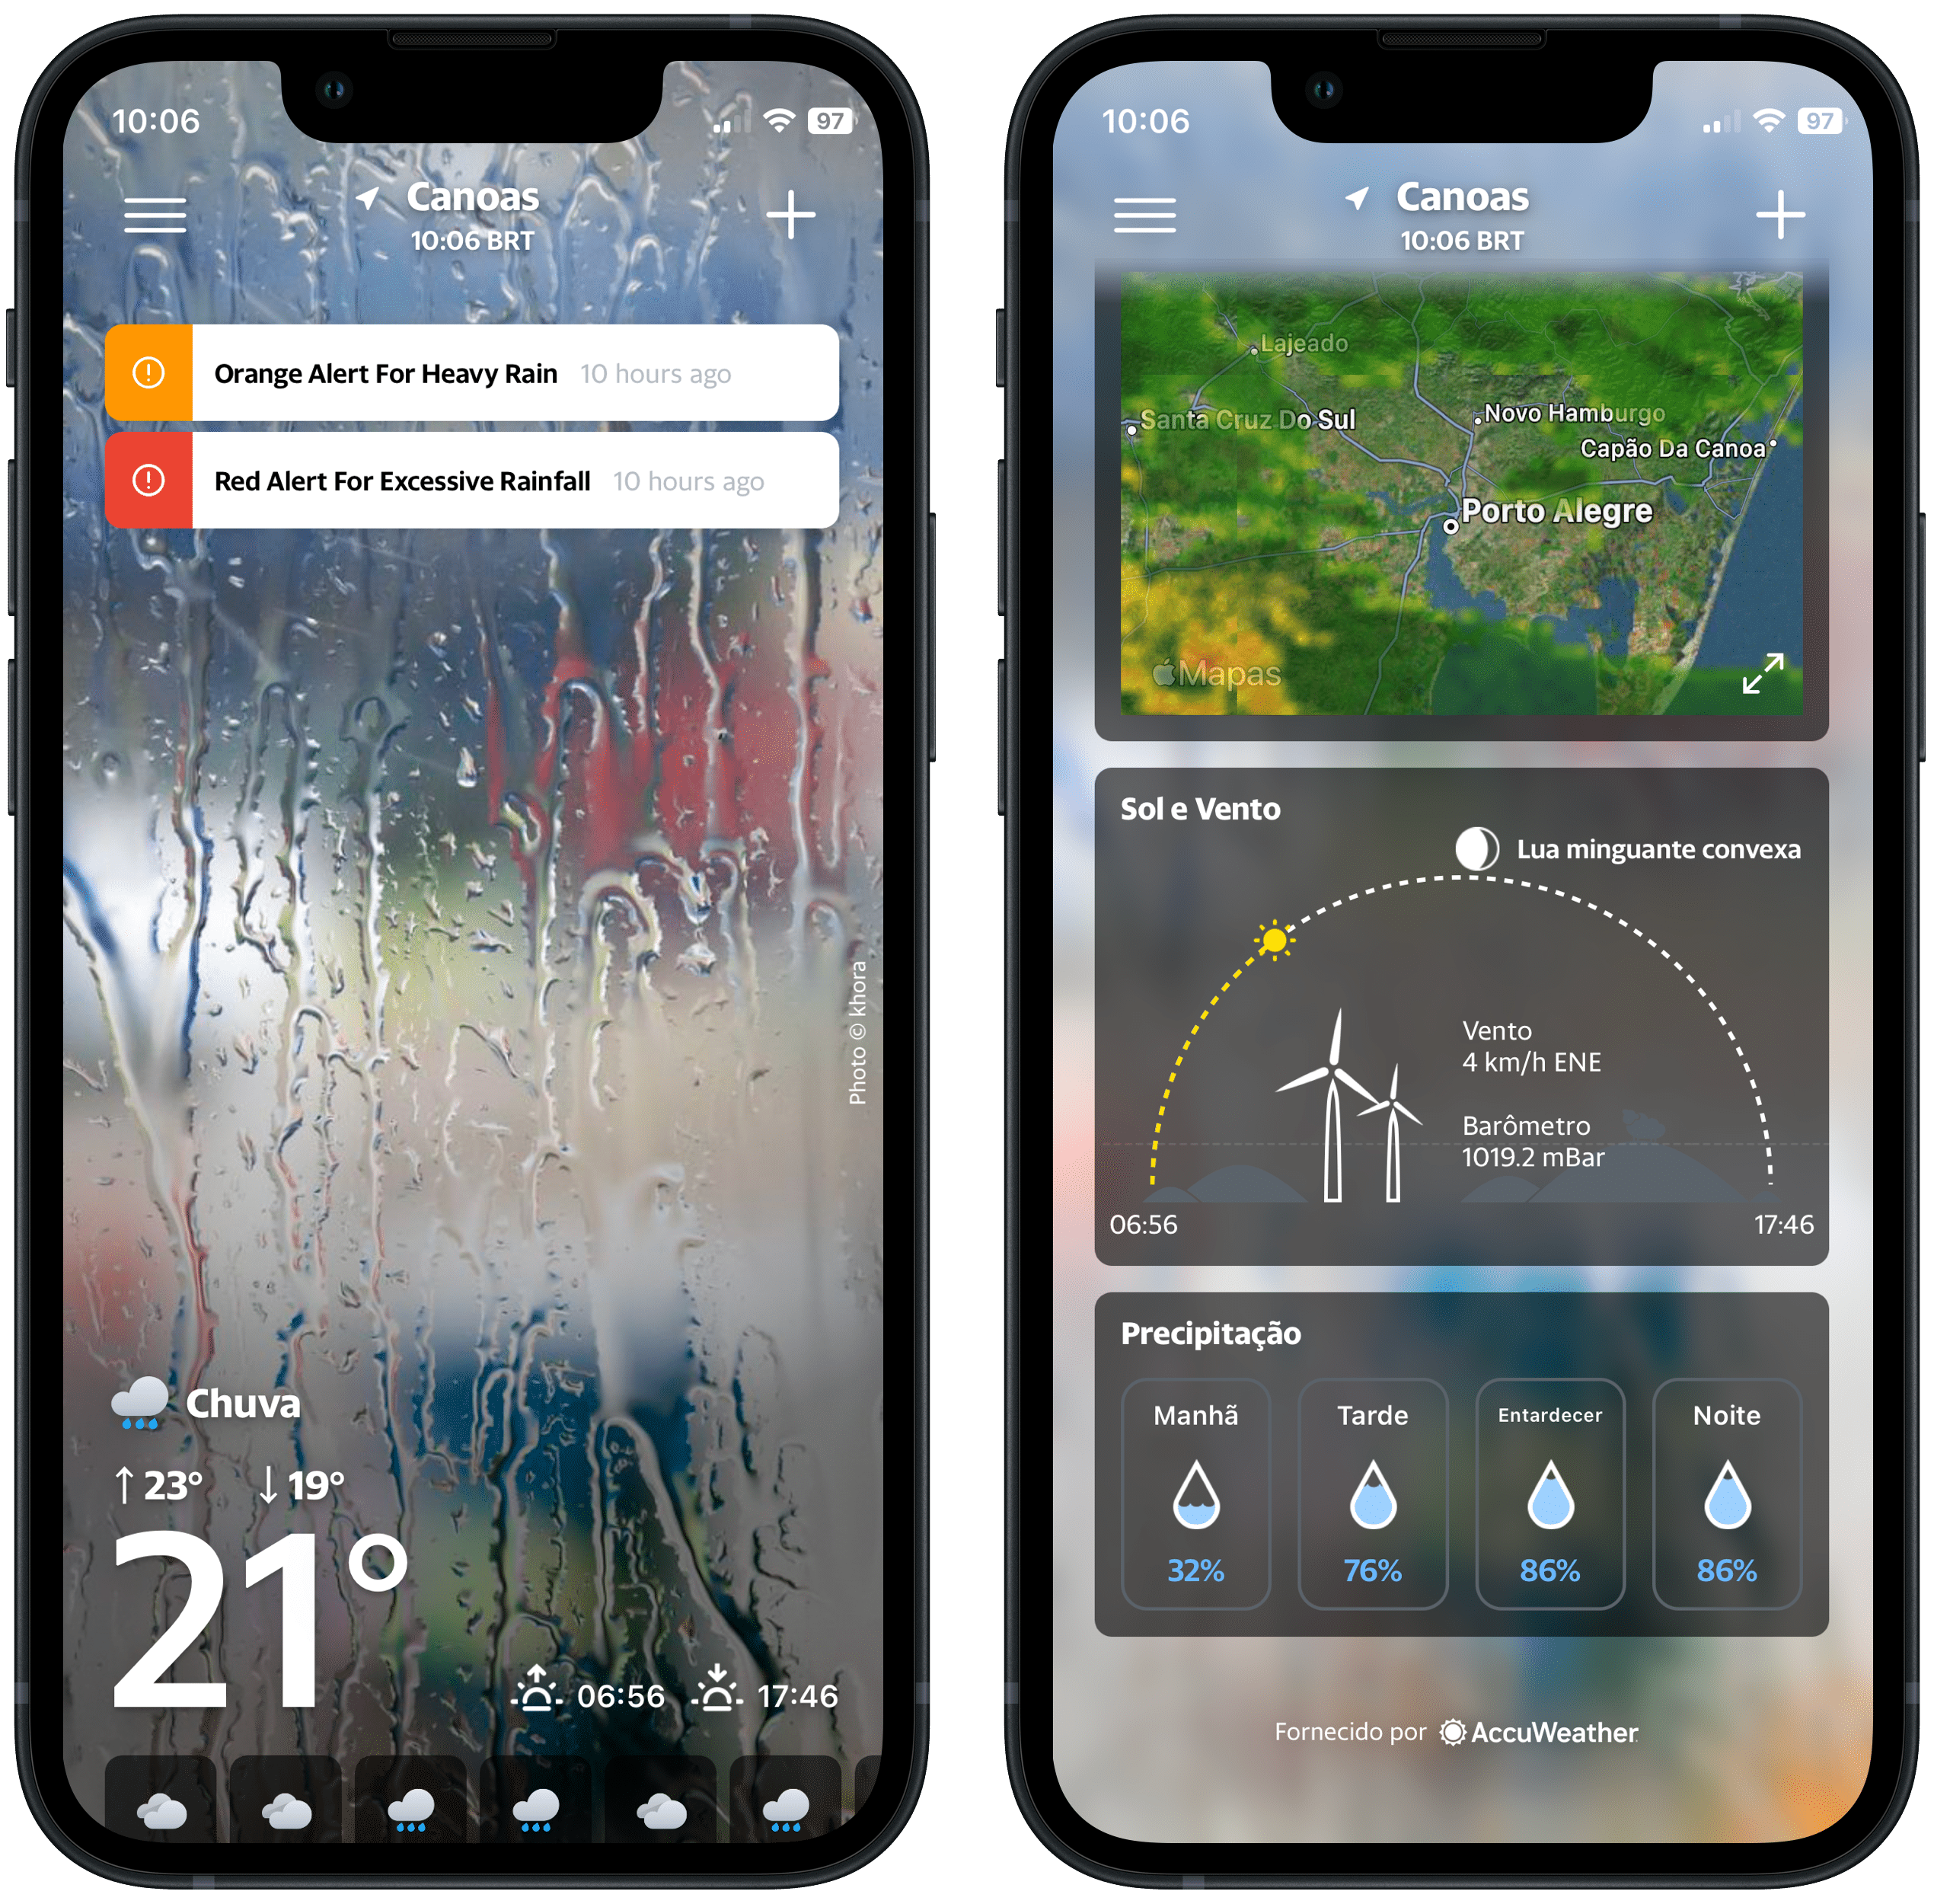 Será que chove? Veja 5 ótimos apps para previsão do tempo - iPlace